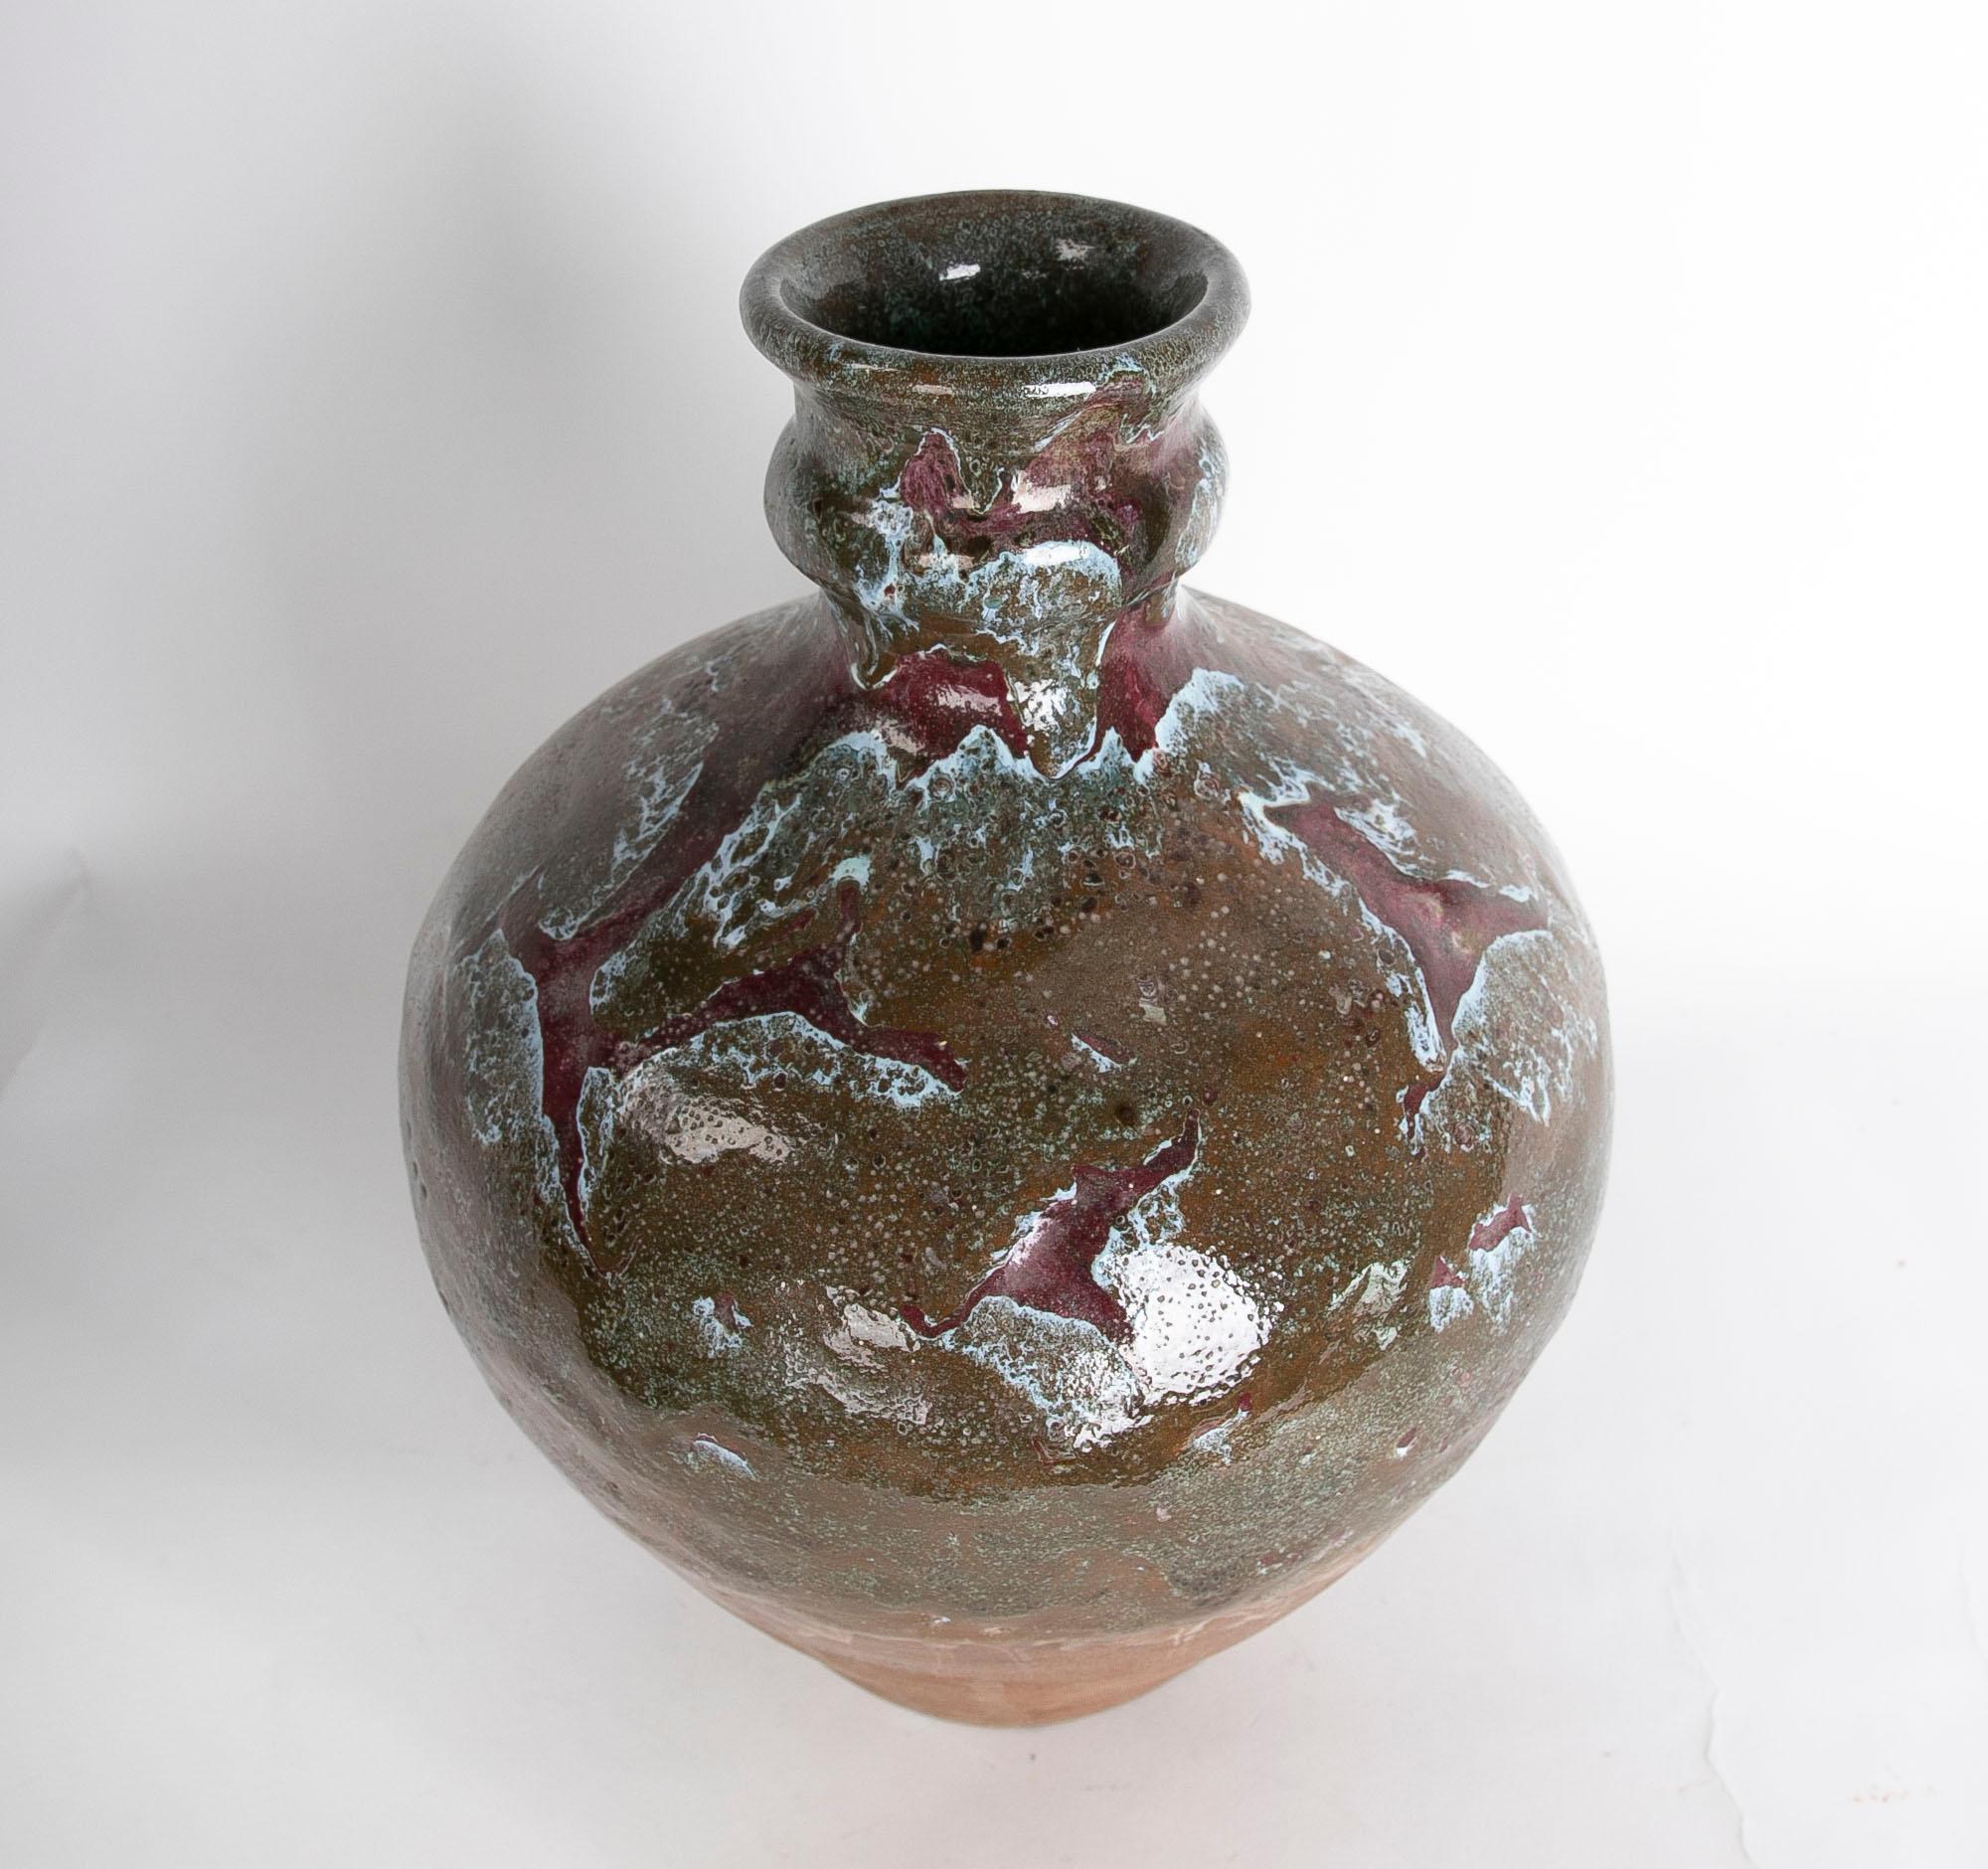 1980s Spanish Glazed Ceramic Vase in Brown Tones.